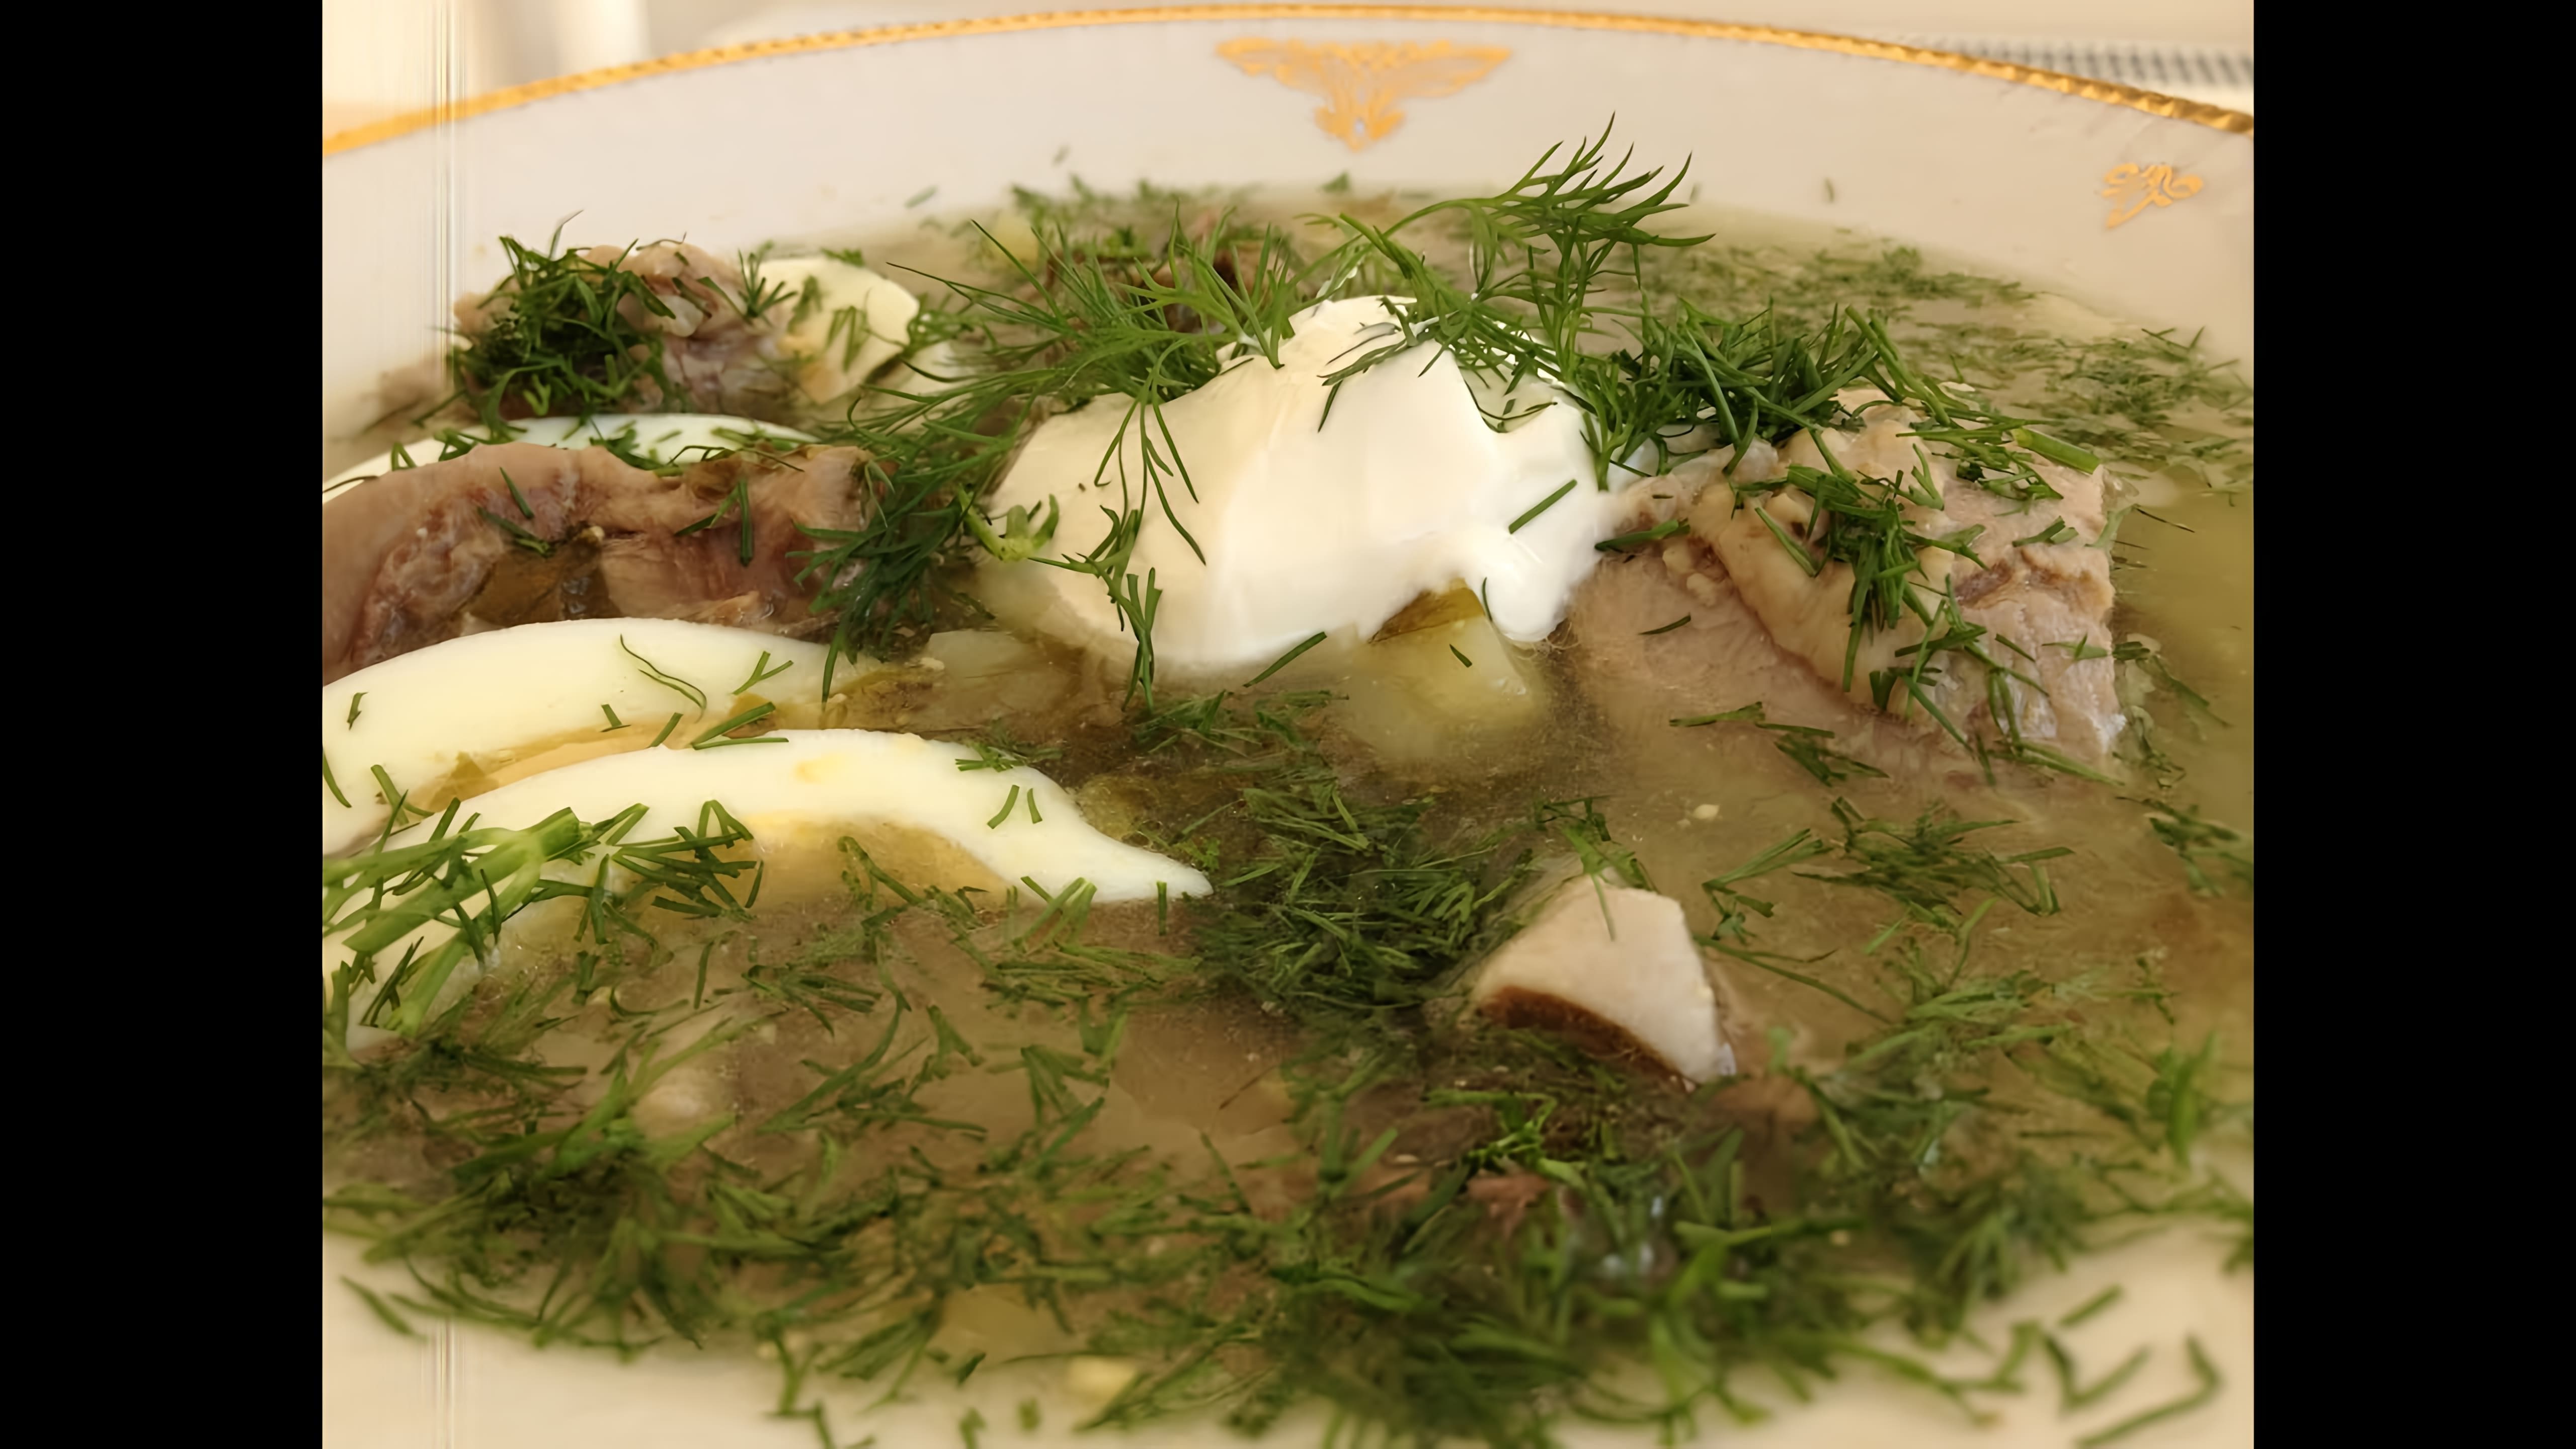 В данном видео демонстрируется процесс приготовления зеленого борща, также известного как щавелевый суп